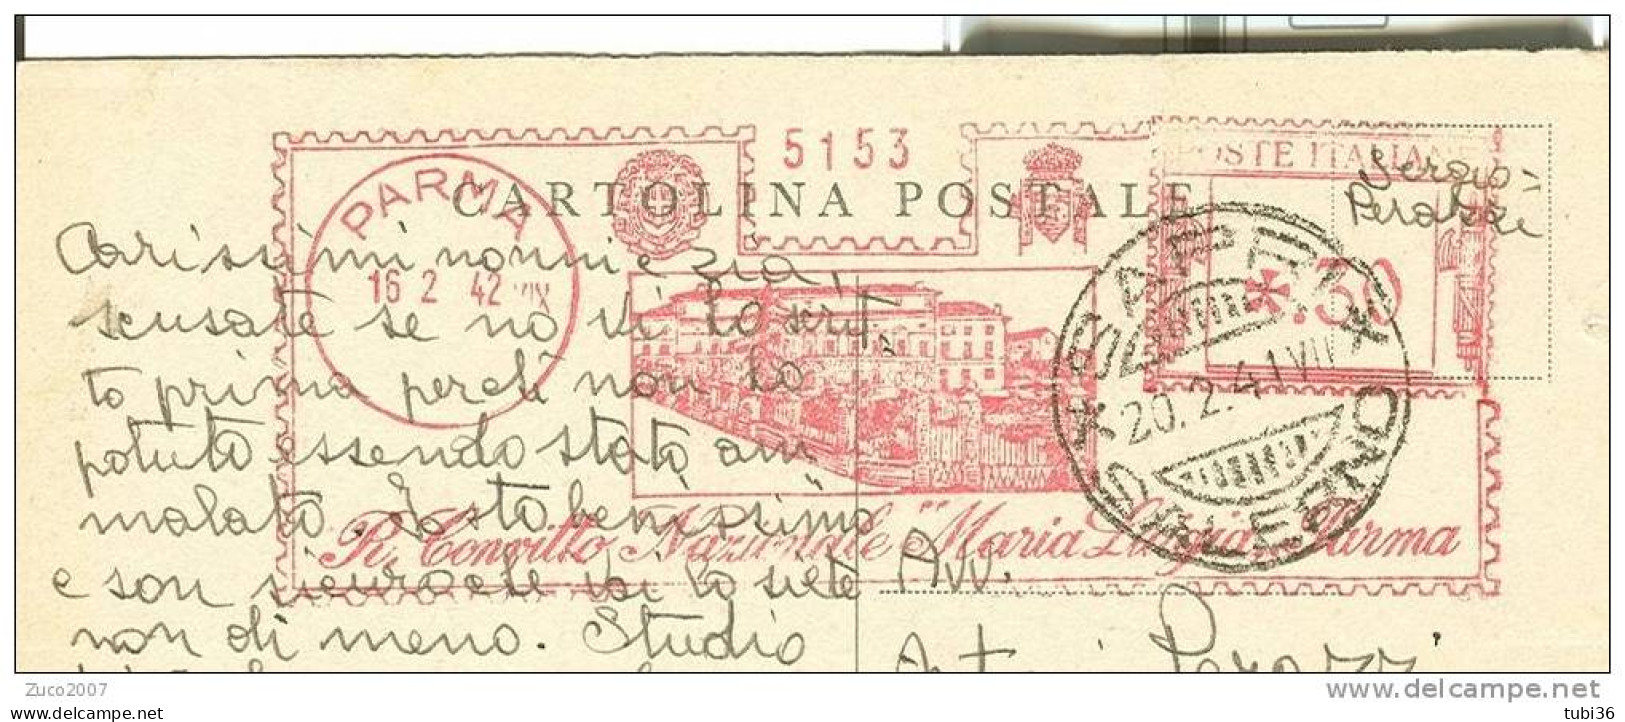 R. CONVITTO NAZIONALE MARIA LUIGIA PARMA - VIAGGIATO 1942 - TIMBRO ROSSO  16/2/1942 DA PARMA A SAPRI (SALERNO). - Pubblicitari